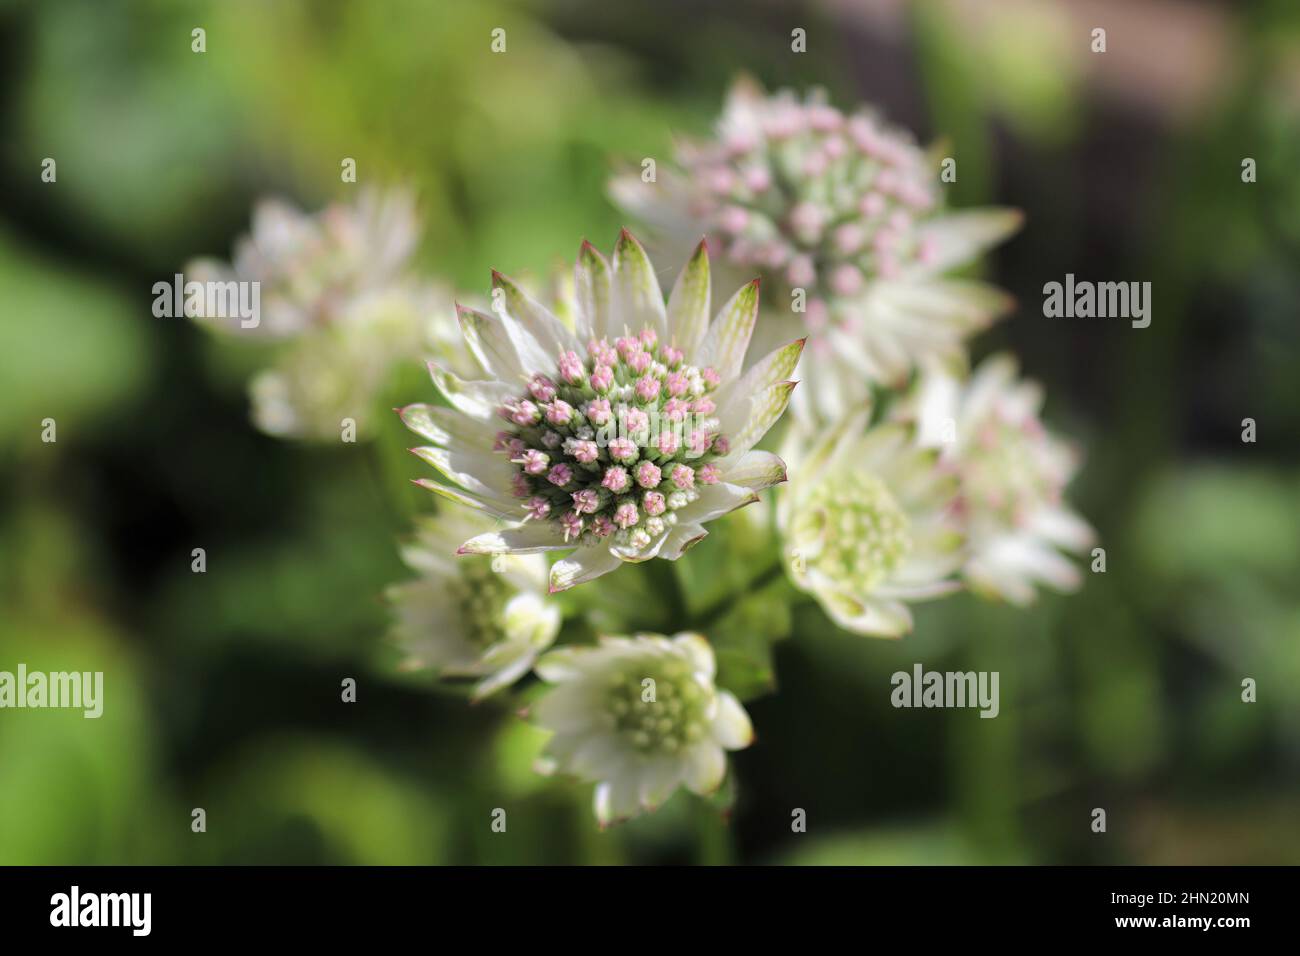 Macro view of pink and white masterwort flowers Stock Photo